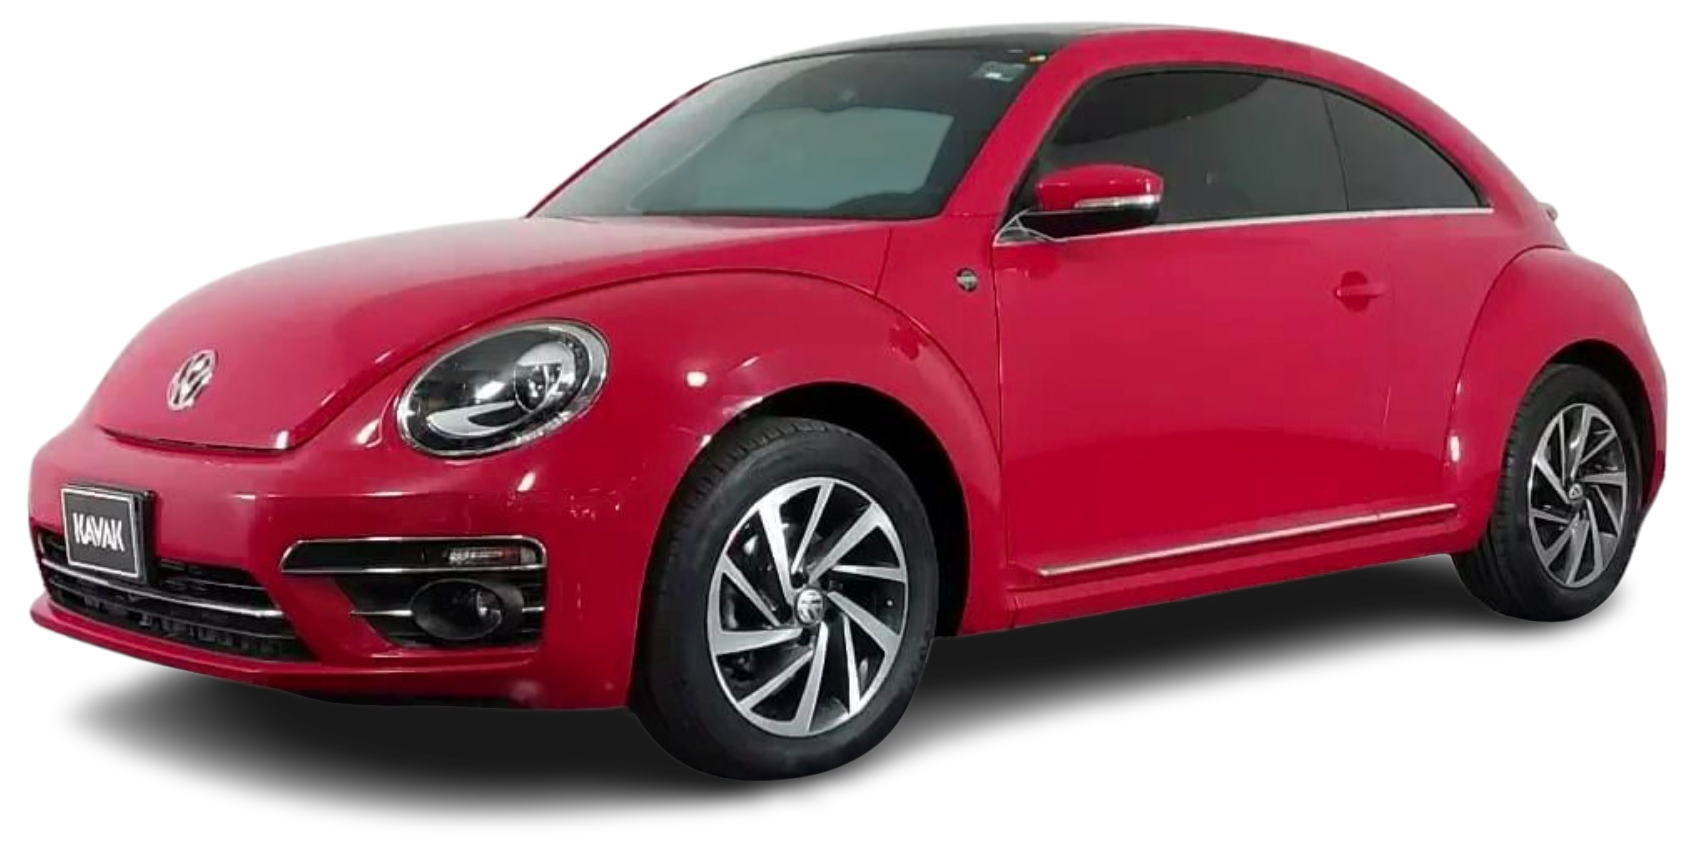 Volkswagen Beetle Hatchback 2019 2018 2017 2016 2015 2014 2013 2012